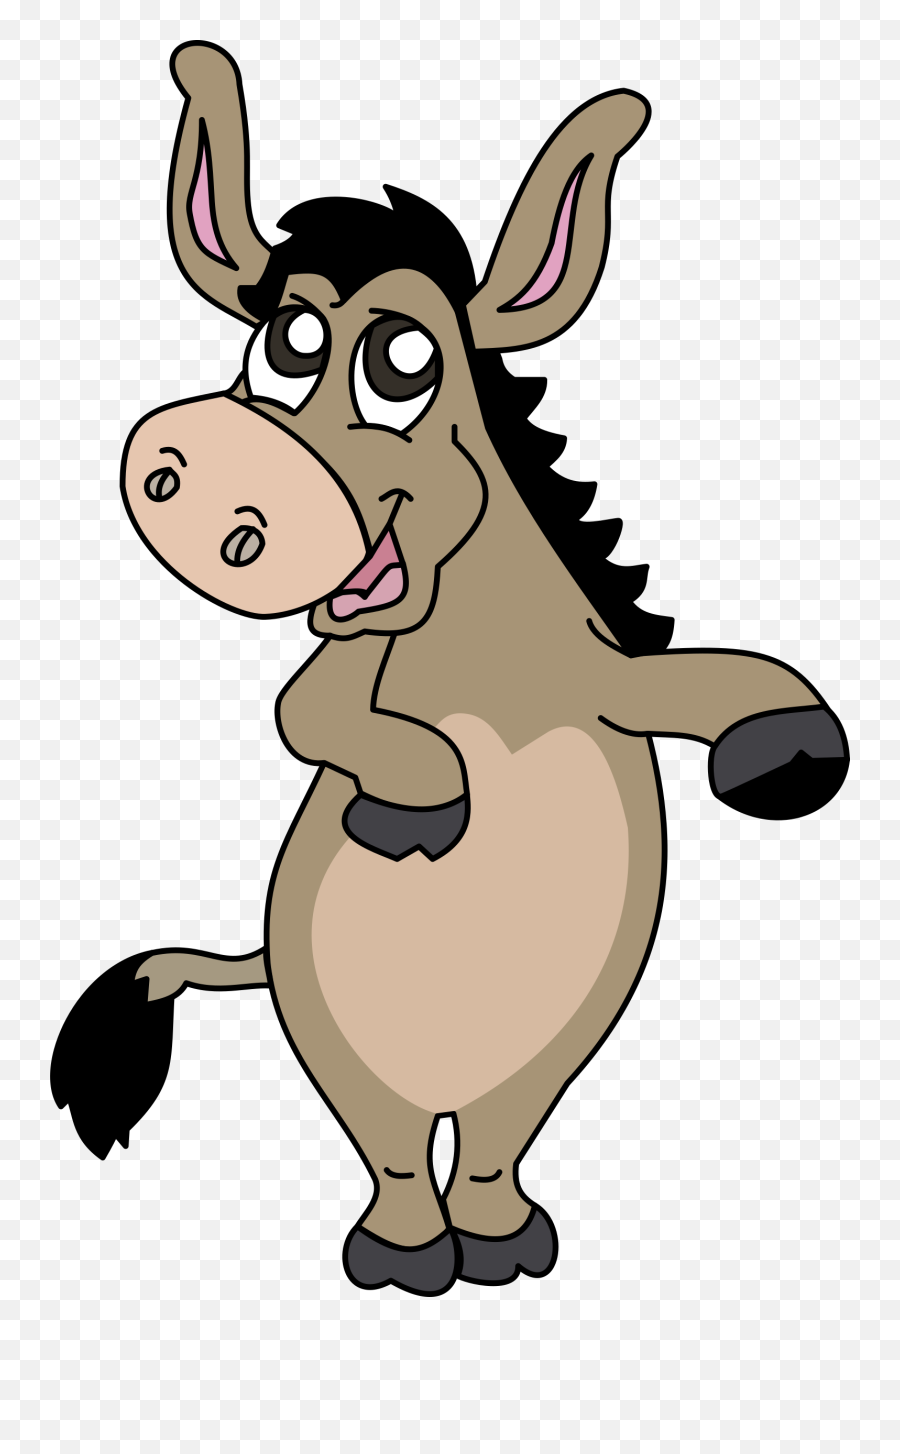 Donkey Clipart Png Transparent Background - Cartoon Donkey Singing,Donkey Shrek Png